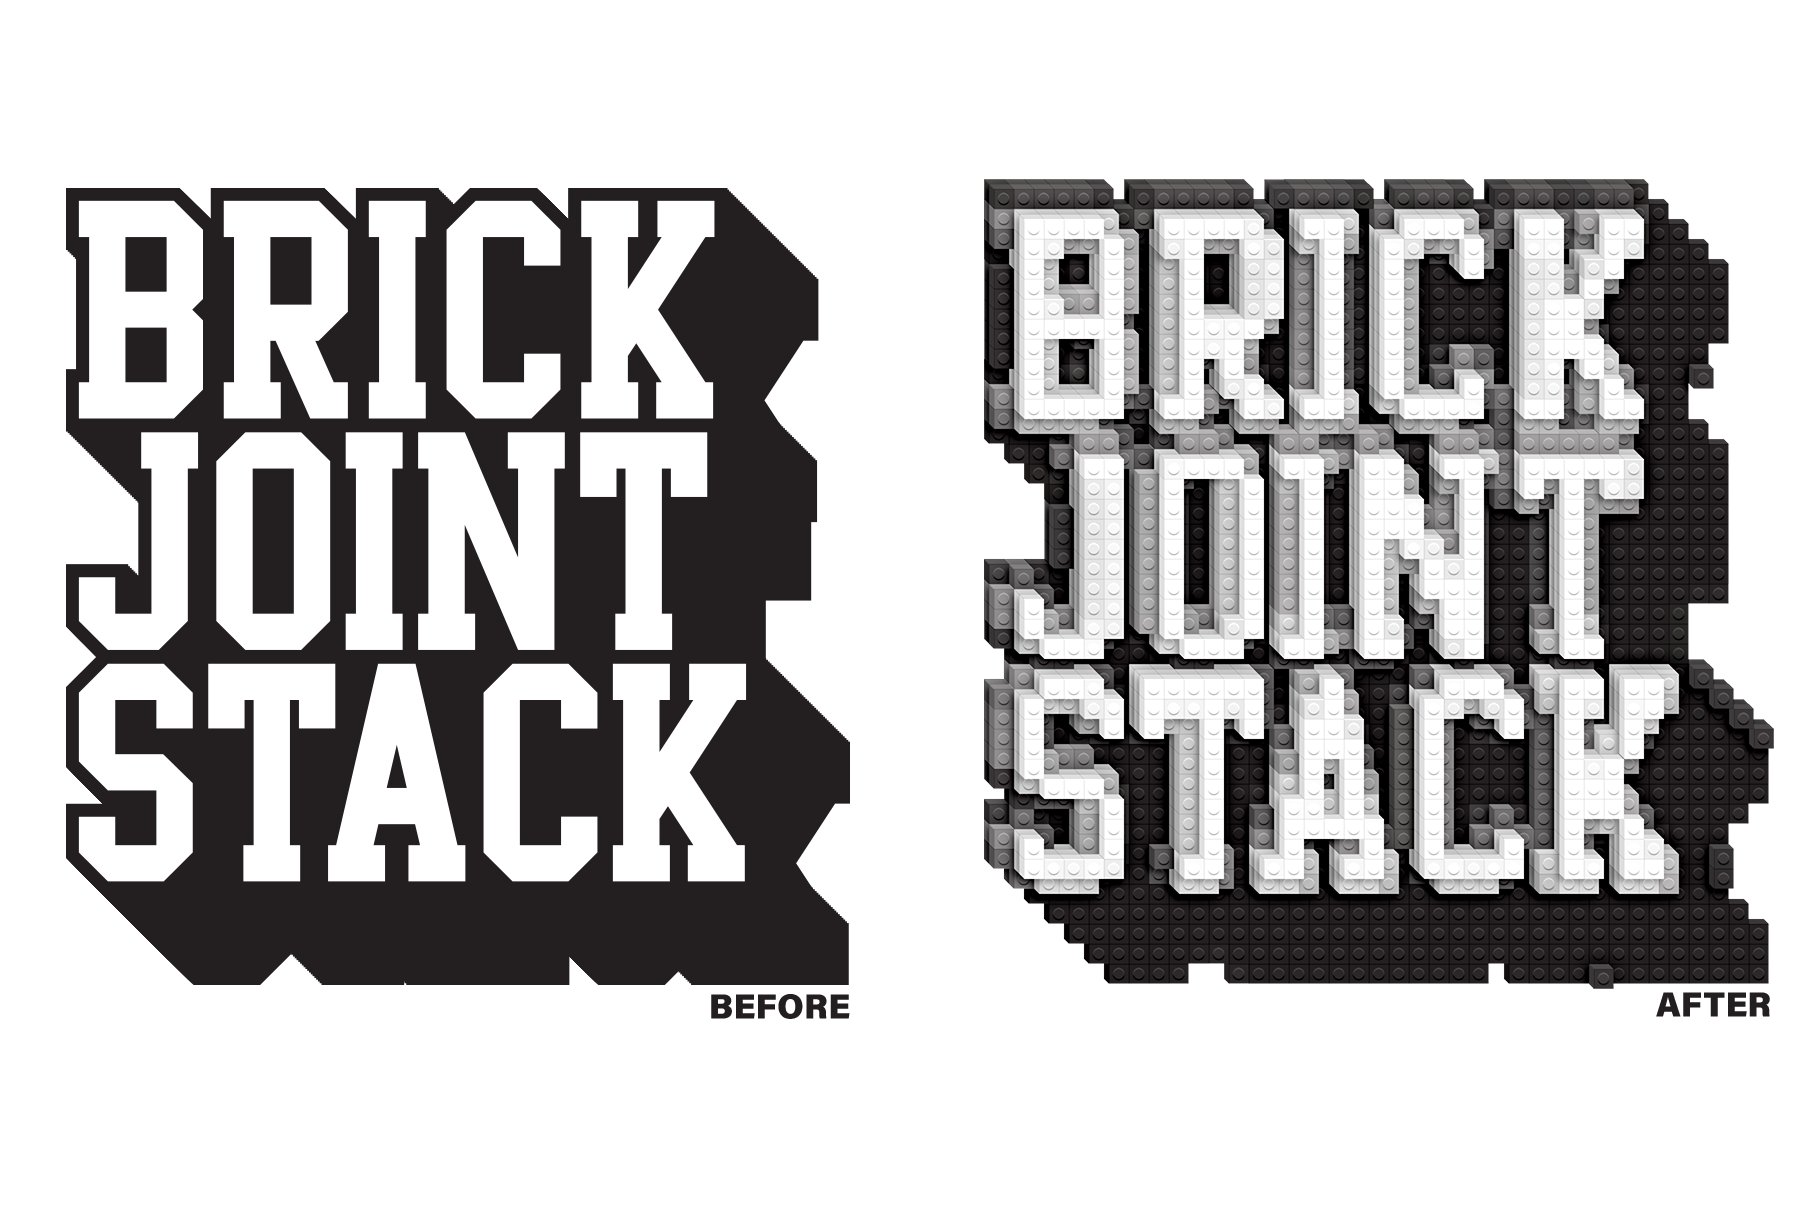 高质量复古乐高几何马赛克风格创意3D积木效果PS动作素材 BrickJoint Effect Action 插件预设 第2张